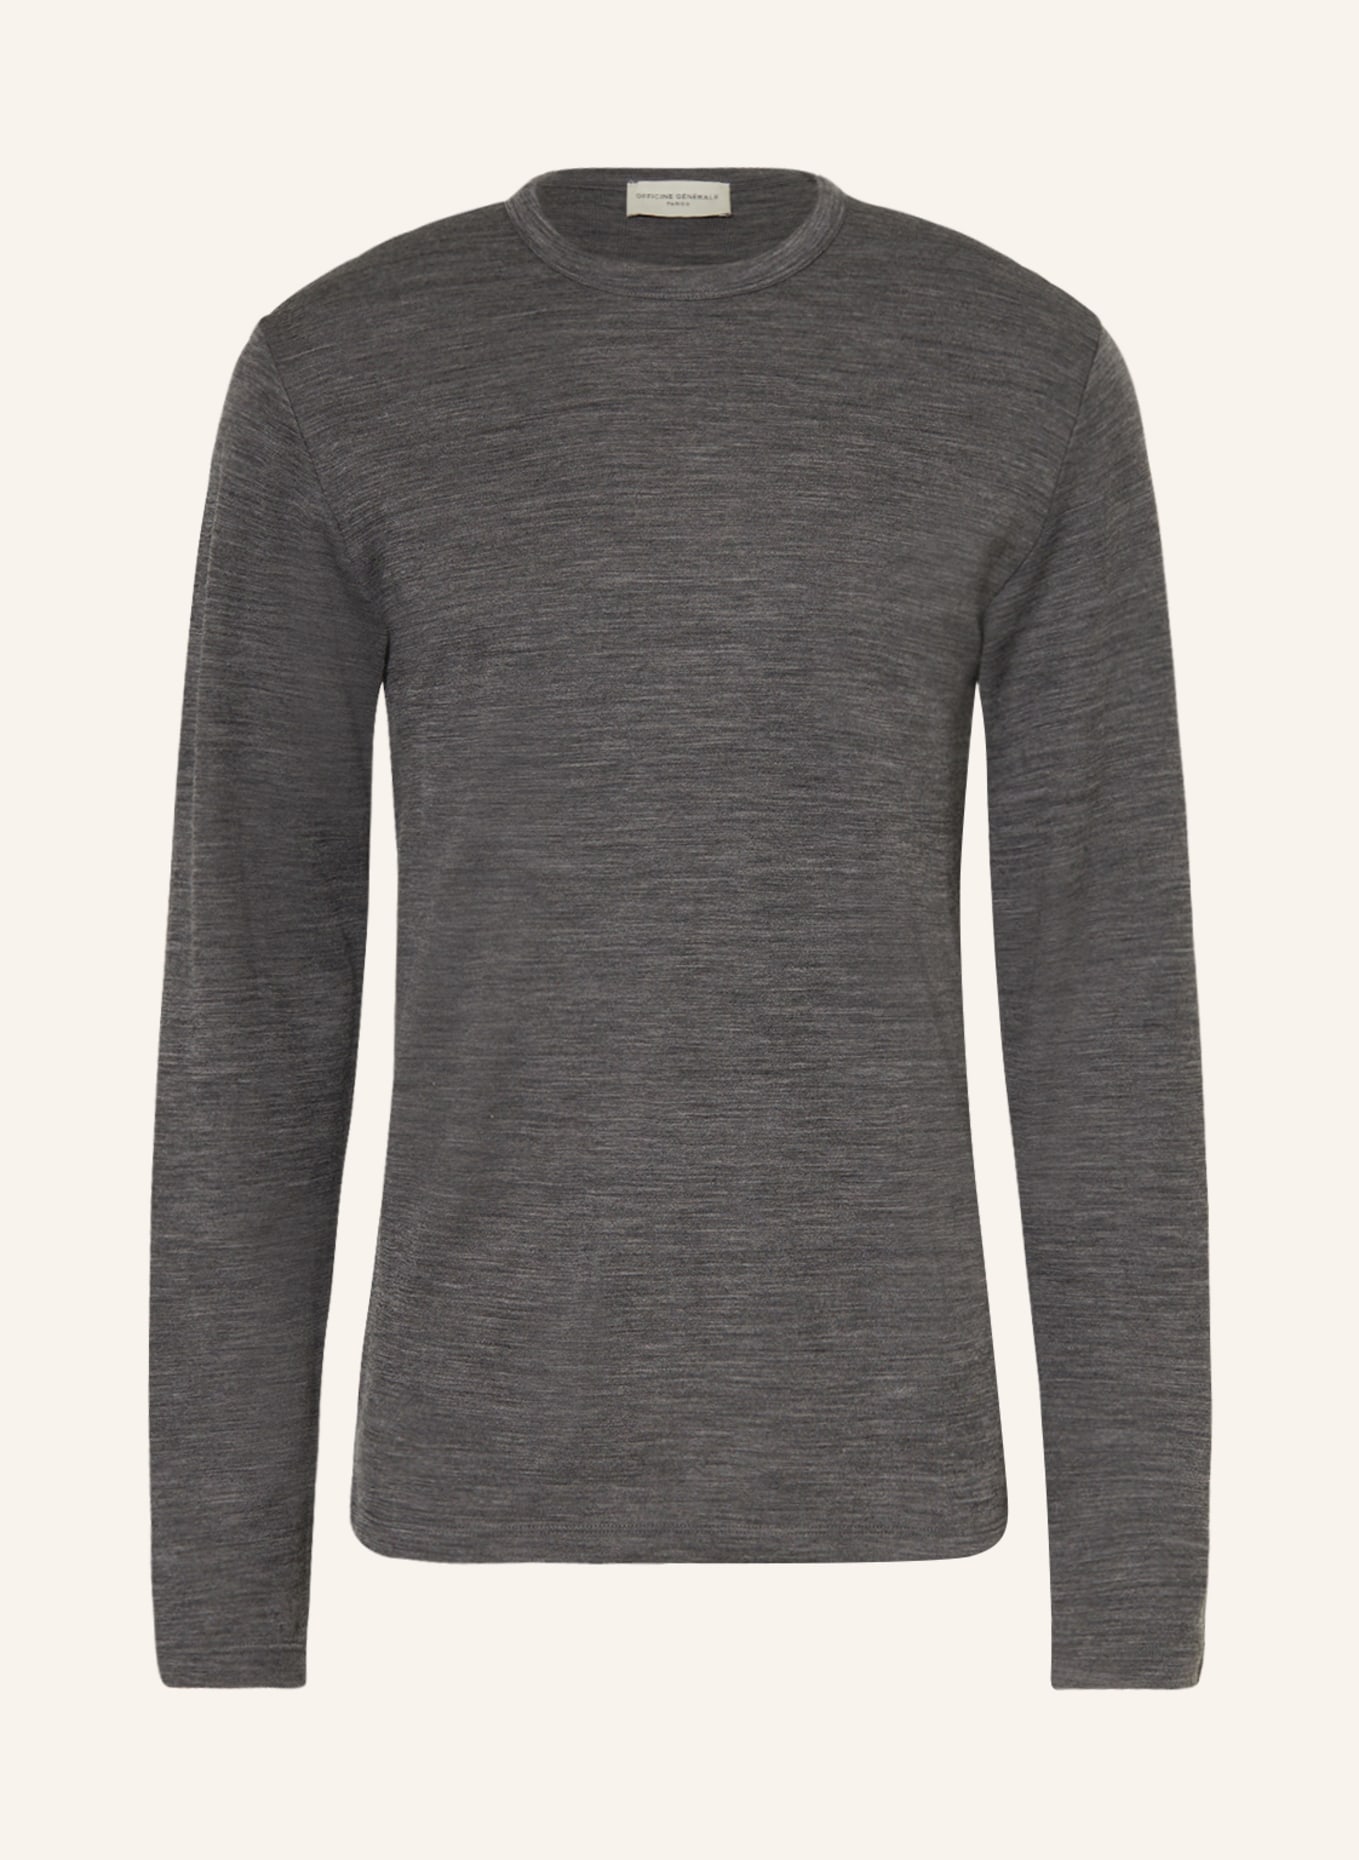 Officine Générale Sweater, Color: GRAY (Image 1)